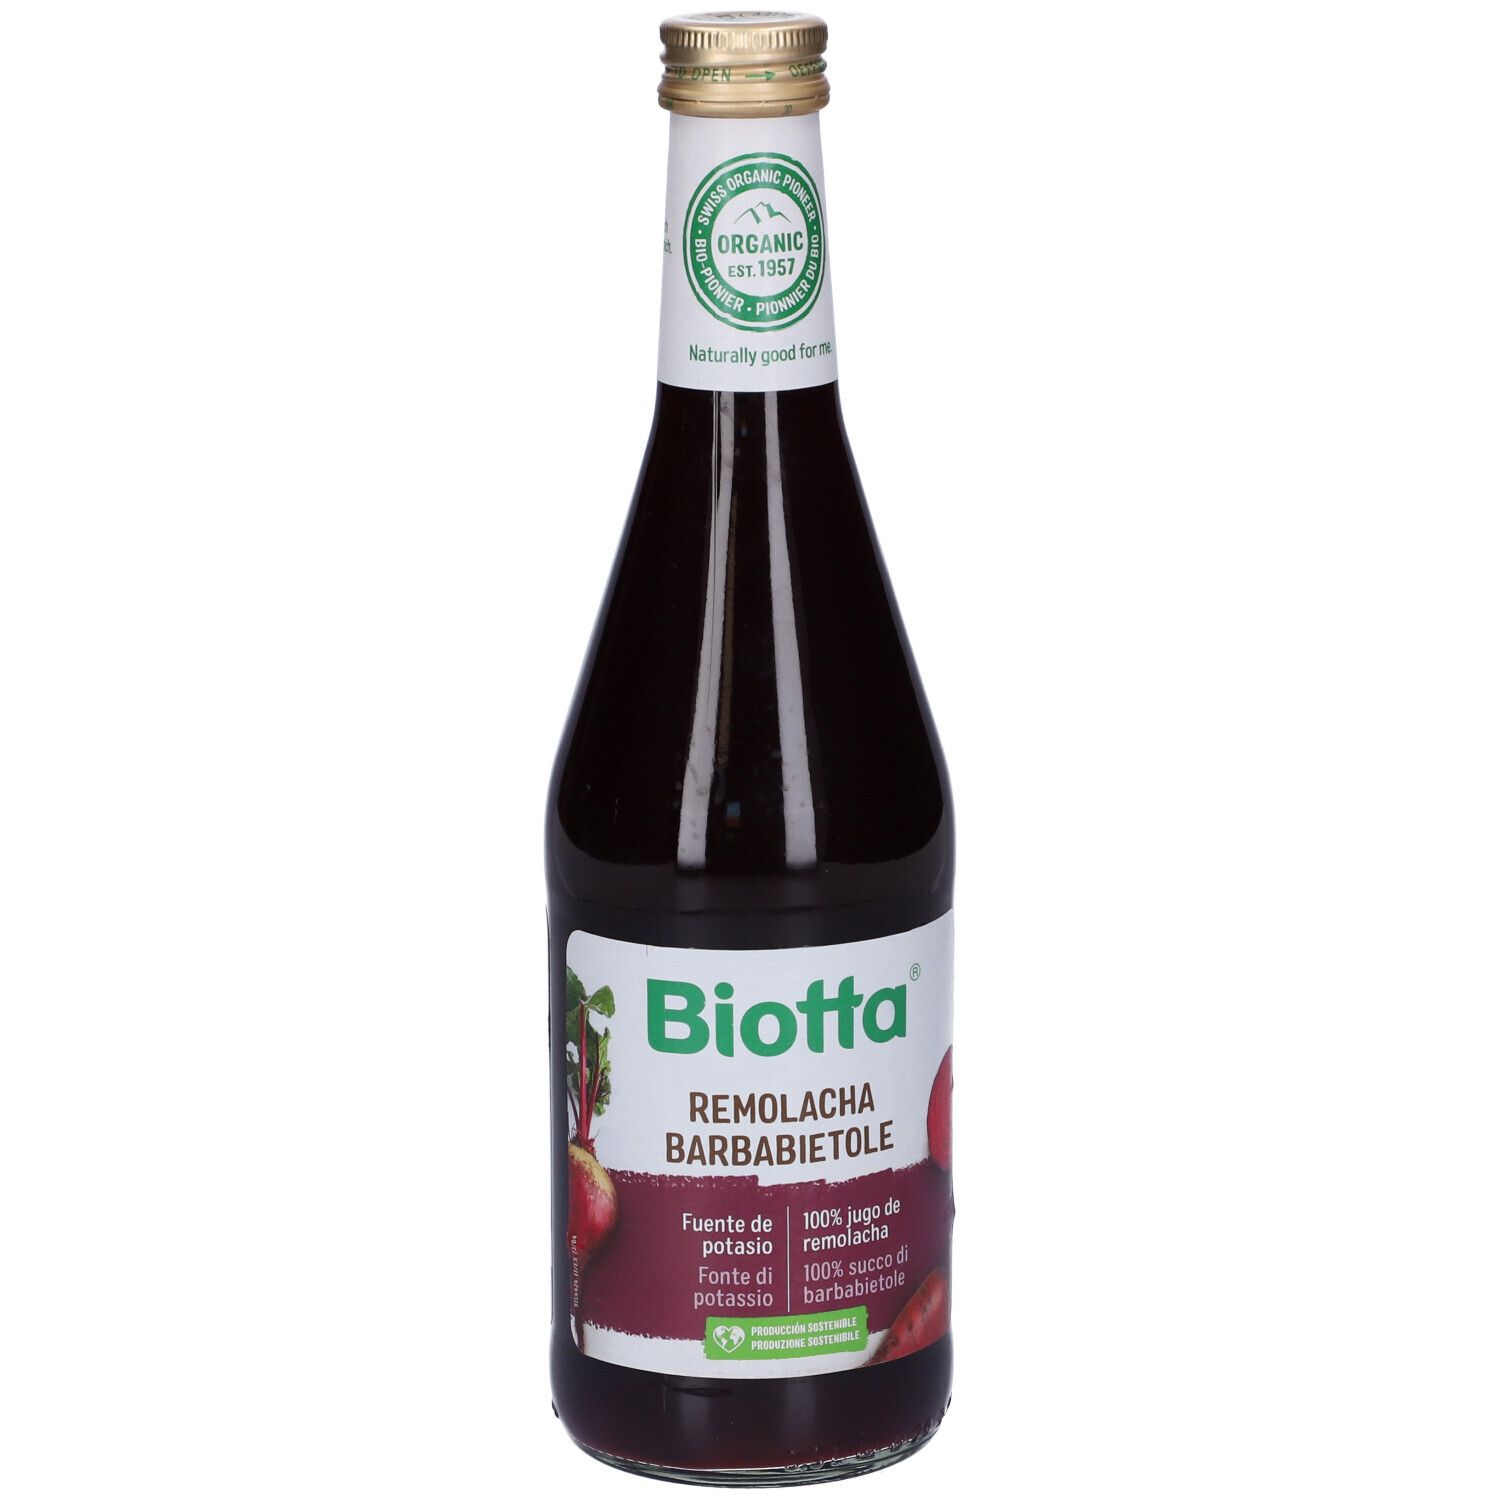 Biotta® Succo di Barbabietola